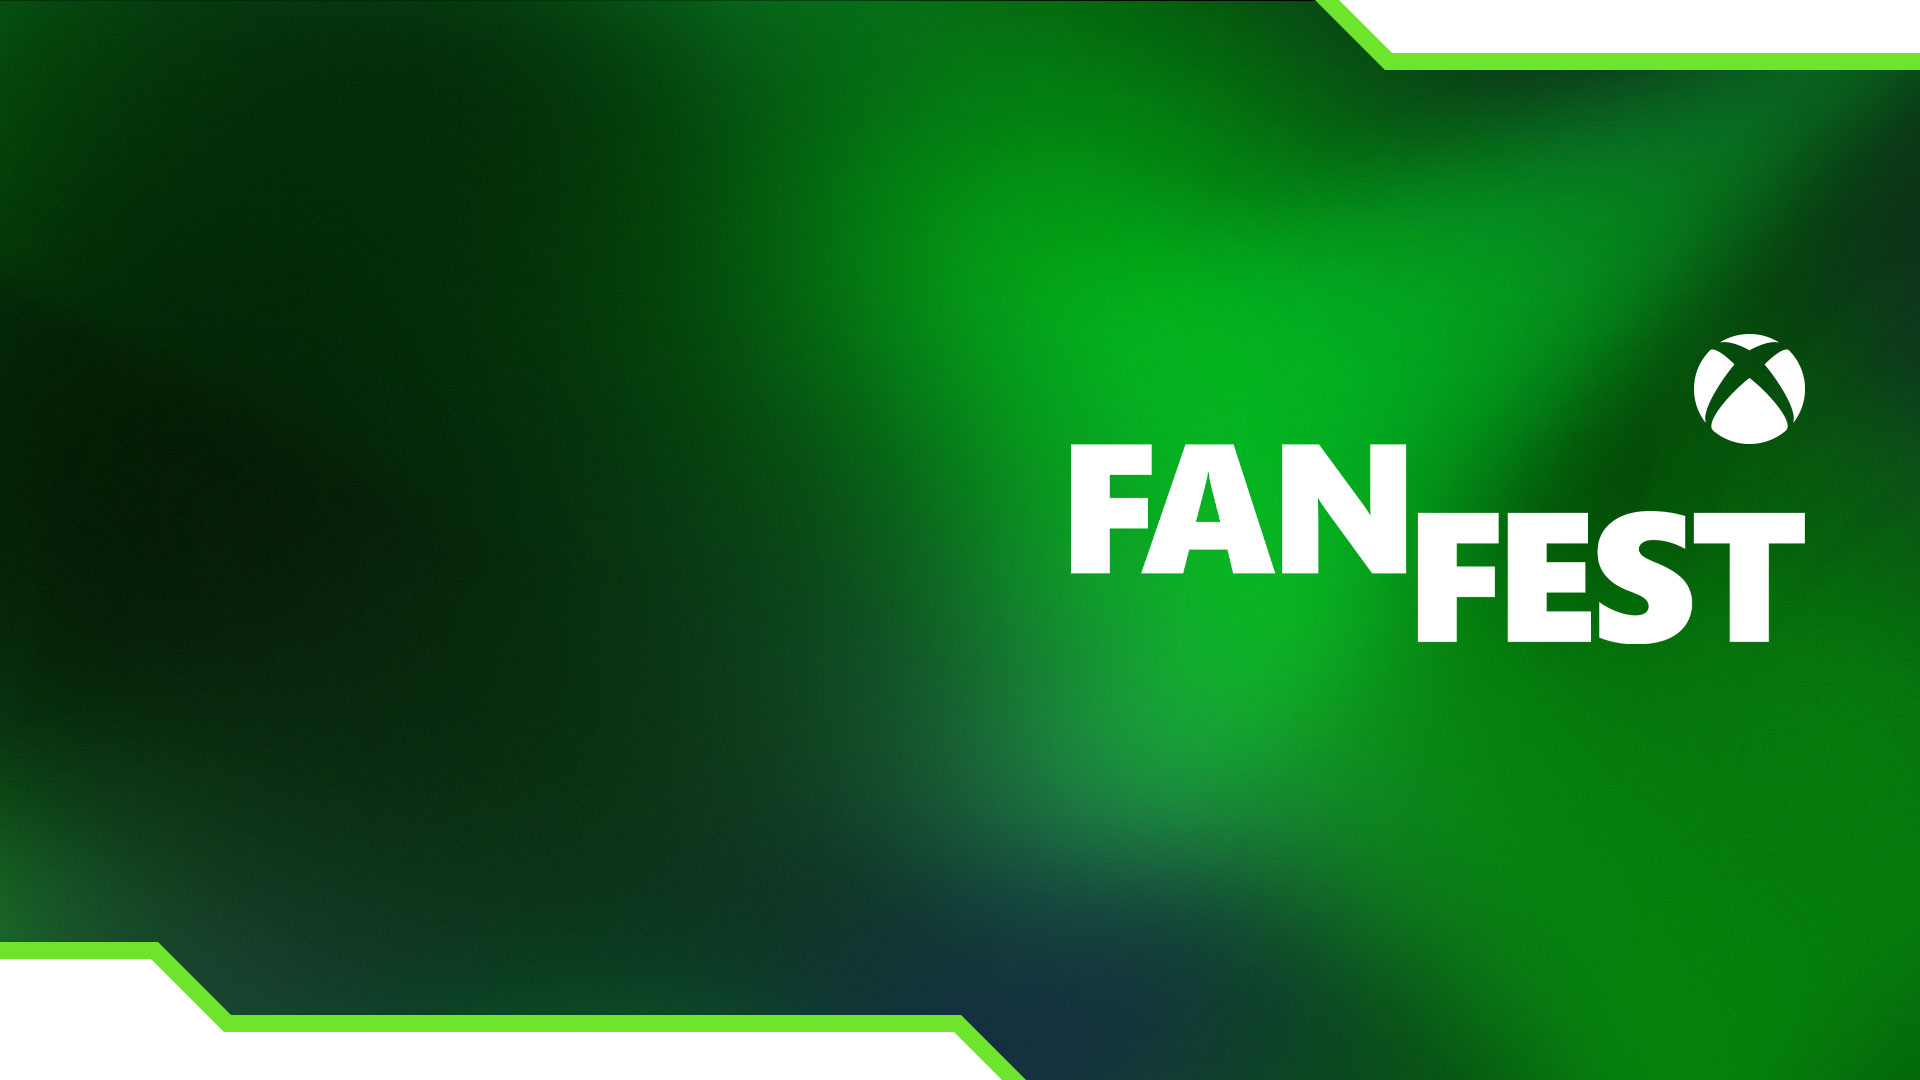 Kula z logiem Xbox FanFest z zielonymi gradientami